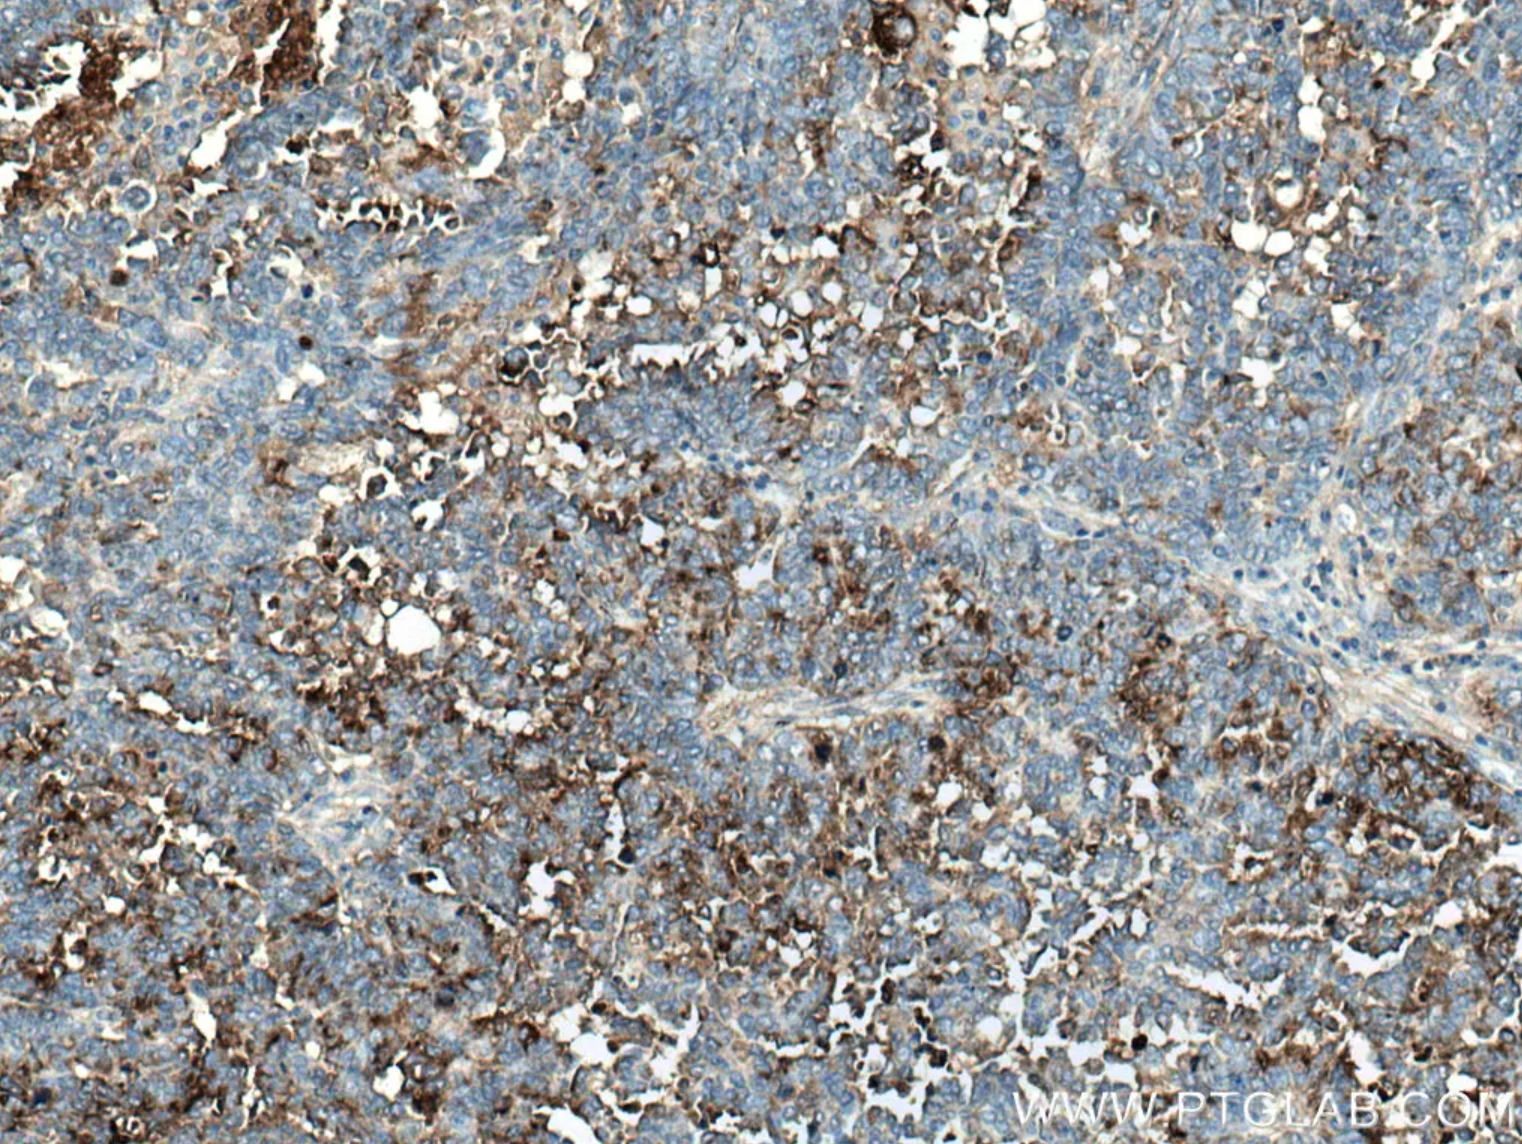 HE4抗体を使用したパラフィン包埋ヒト卵巣腫瘍組織スライドの免疫組織化学染色。